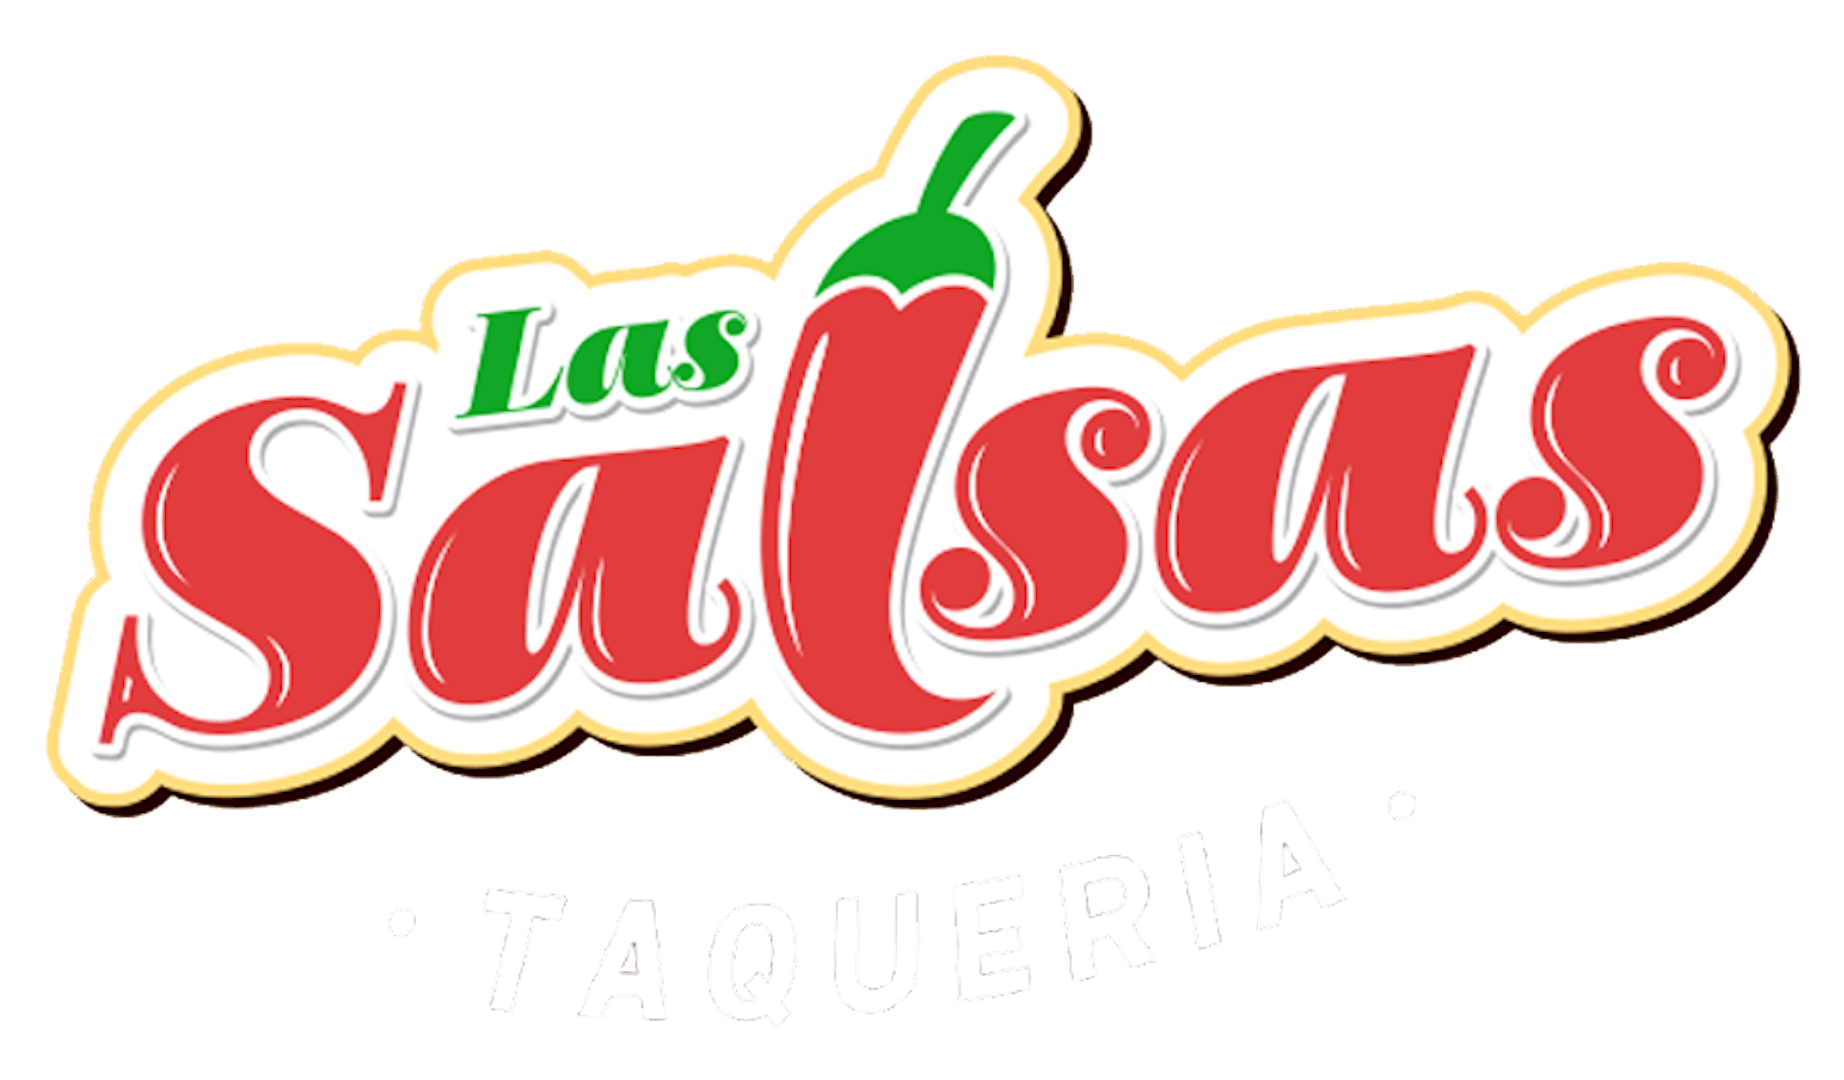 Las Salsas Taqueria